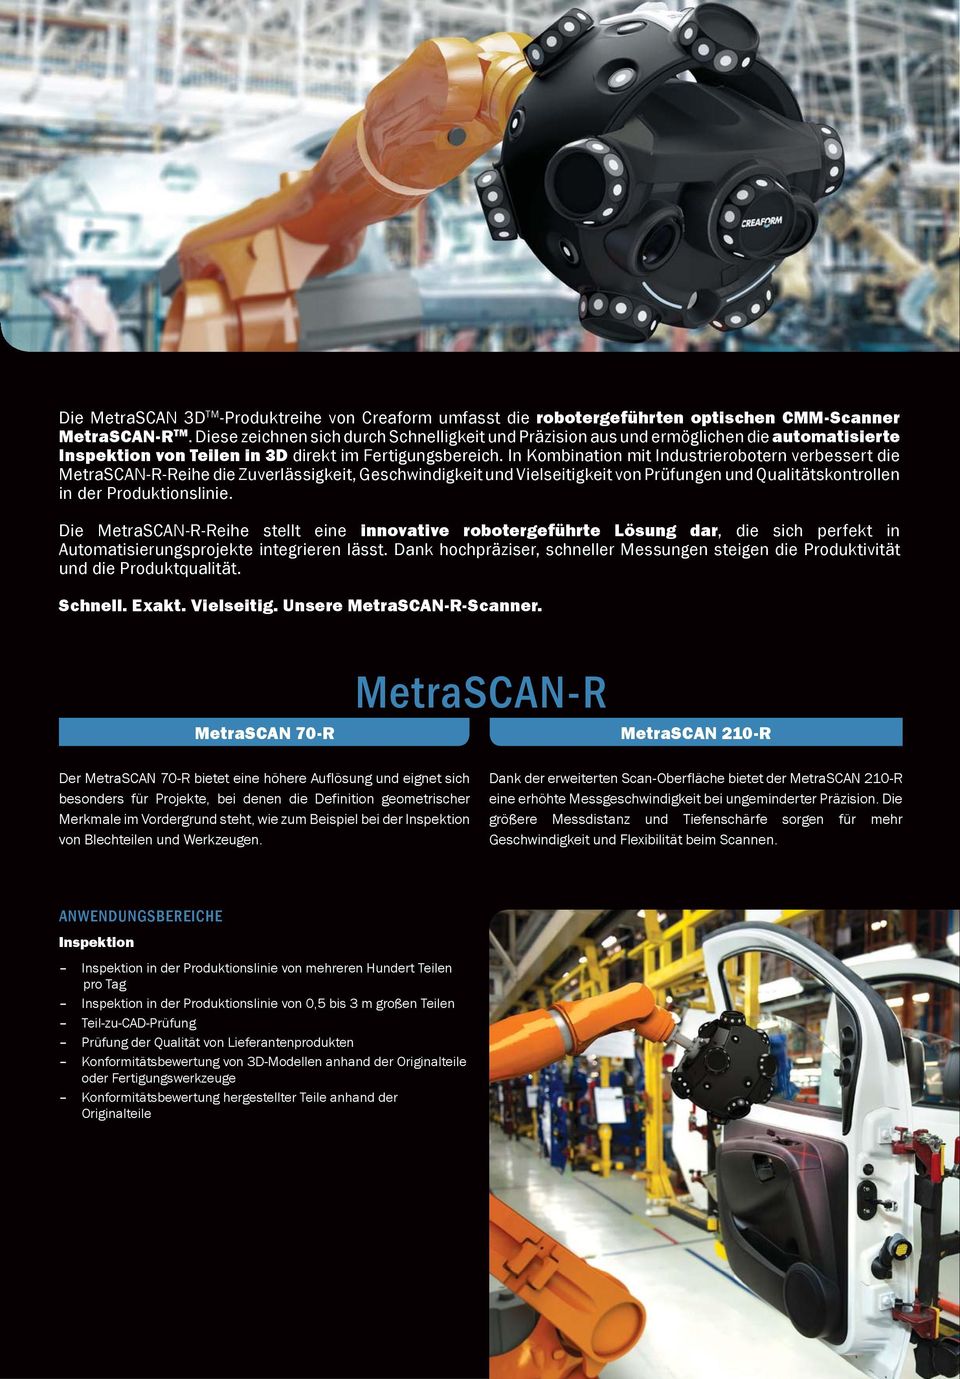 In Kombination mit Industrierobotern verbessert die MetraSCAN-R-Reihe die Zuverlässigkeit, Geschwindigkeit und Vielseitigkeit von Prüfungen und Qualitätskontrollen in der Produktionslinie.